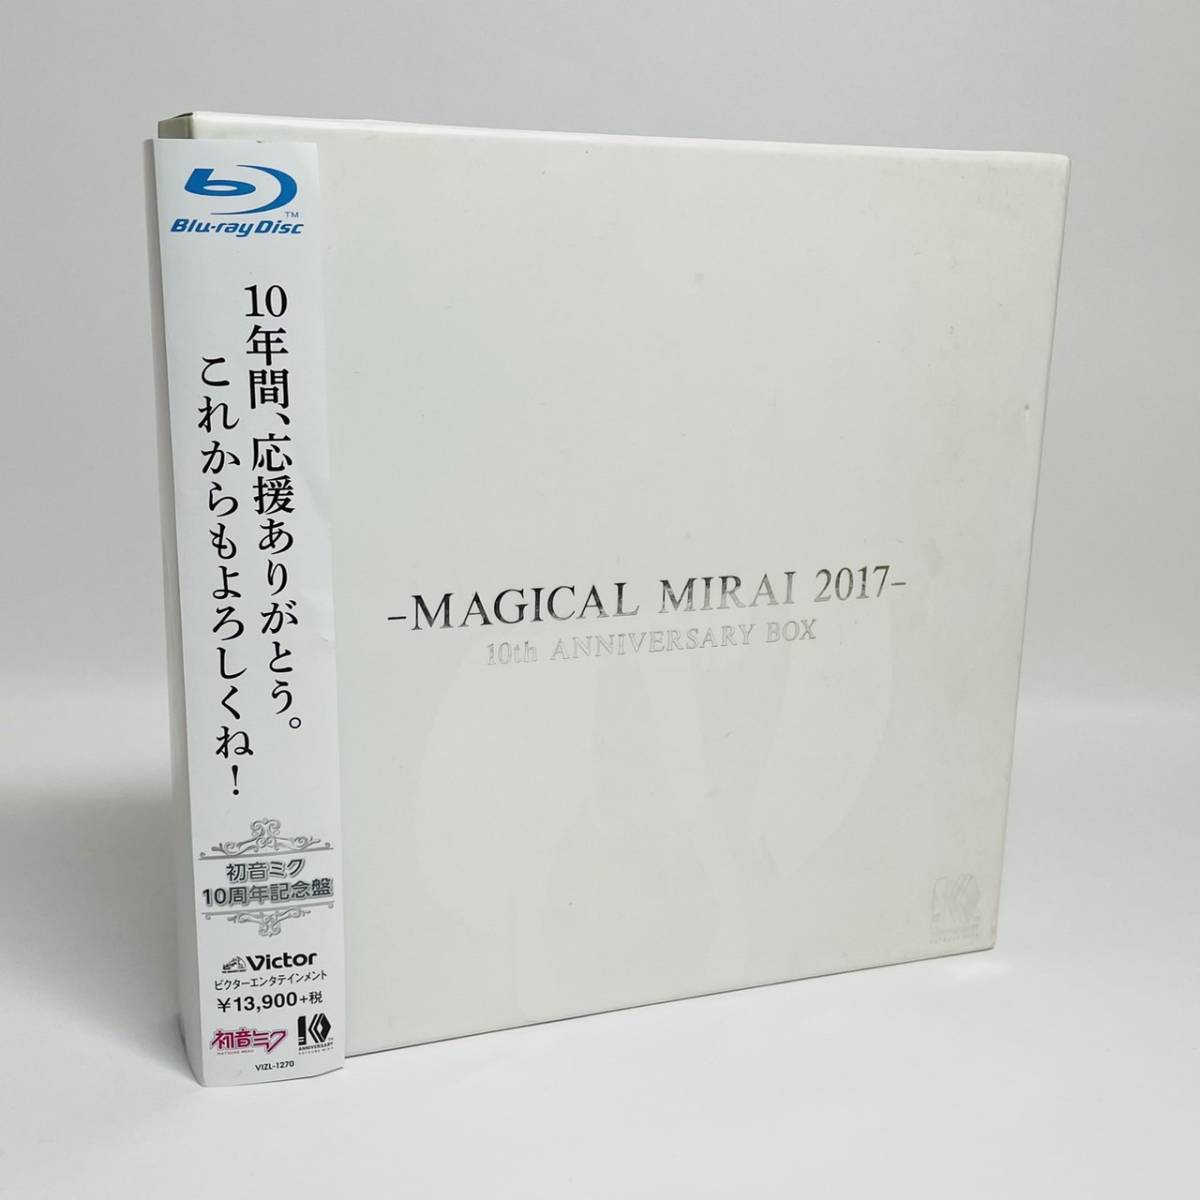 マジカルミライ 2017 初音ミク10周年記念盤(完全生産限定盤Blu-ray)